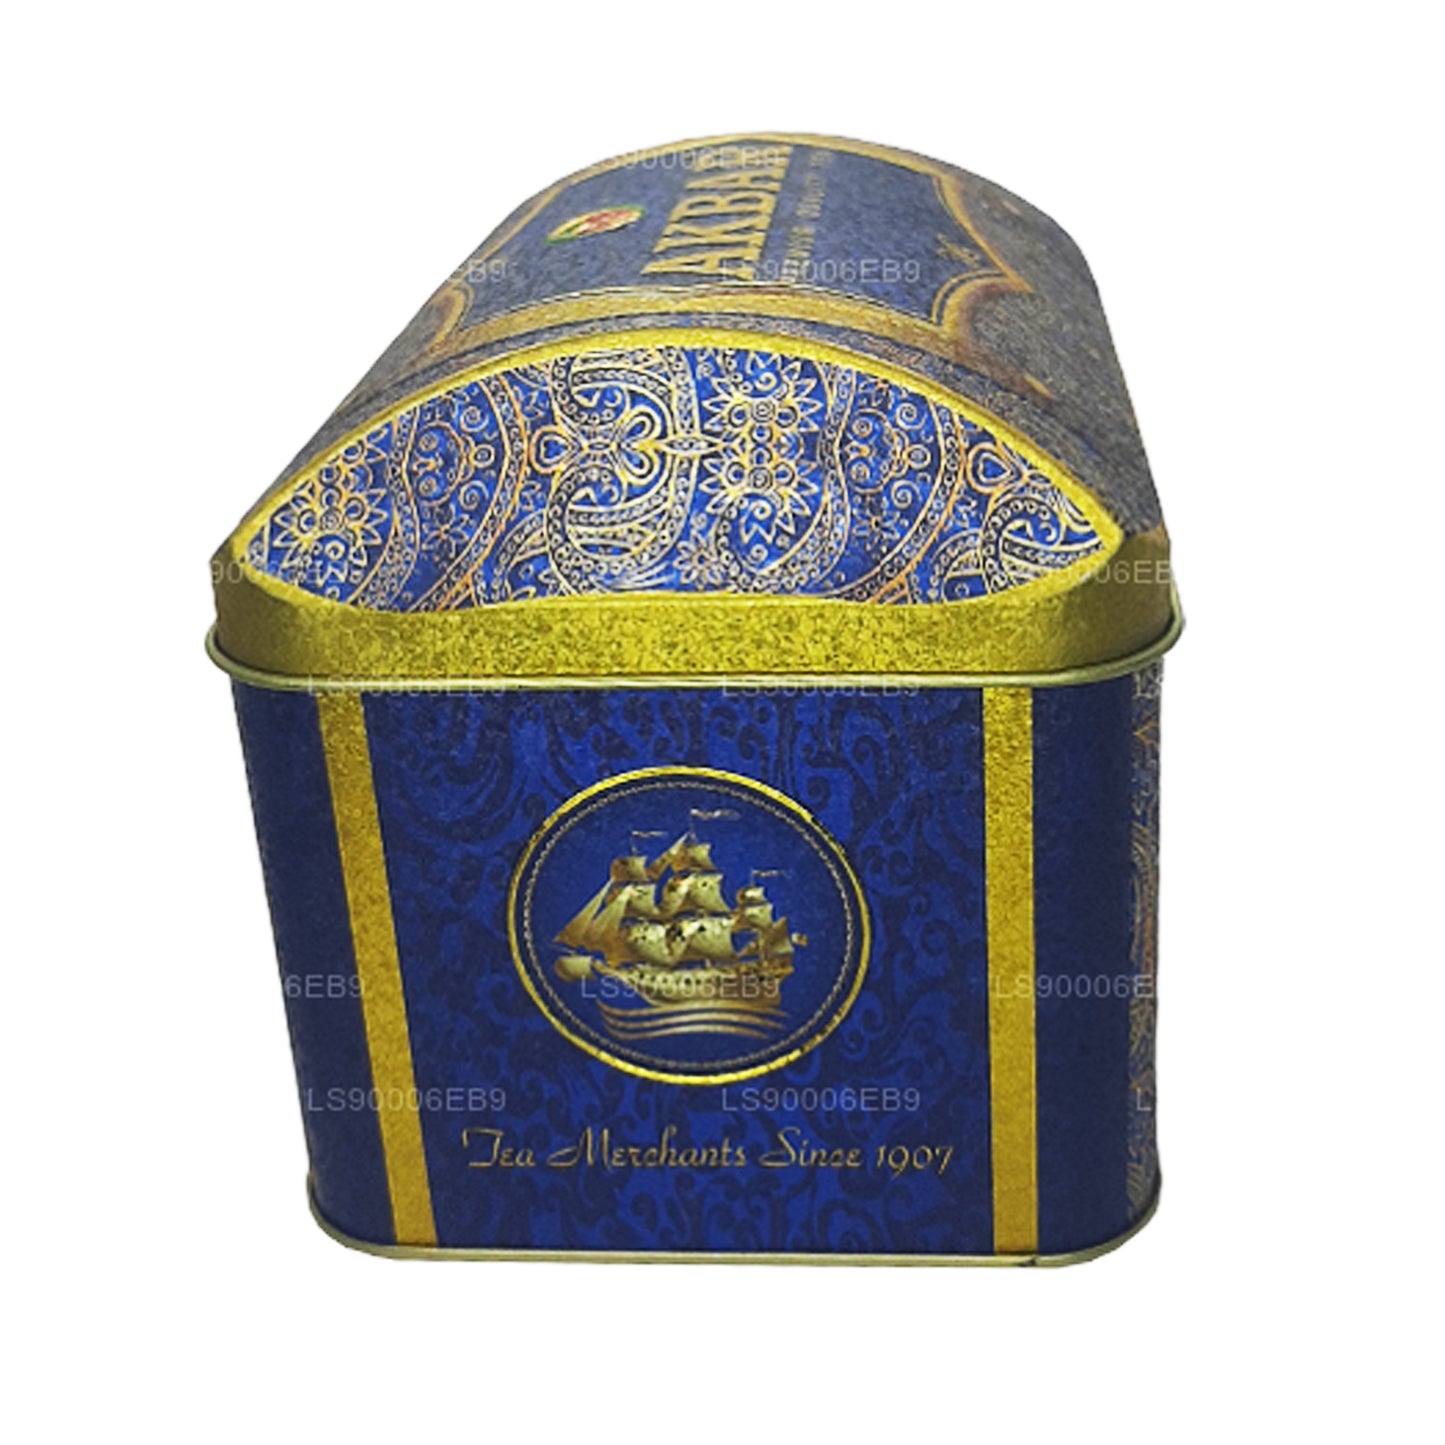 Akbar eksklusiivne kollektsioon Oriental Mystery Treasure Box (250g)